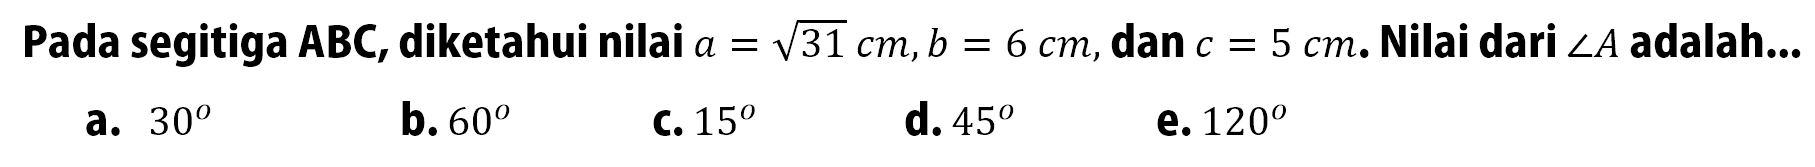 Pada segitiga ABC, diketahui nilai a=akar(31 cm, b=6 cm, dan c=5 cm. Nilai dari sudut A adalah...